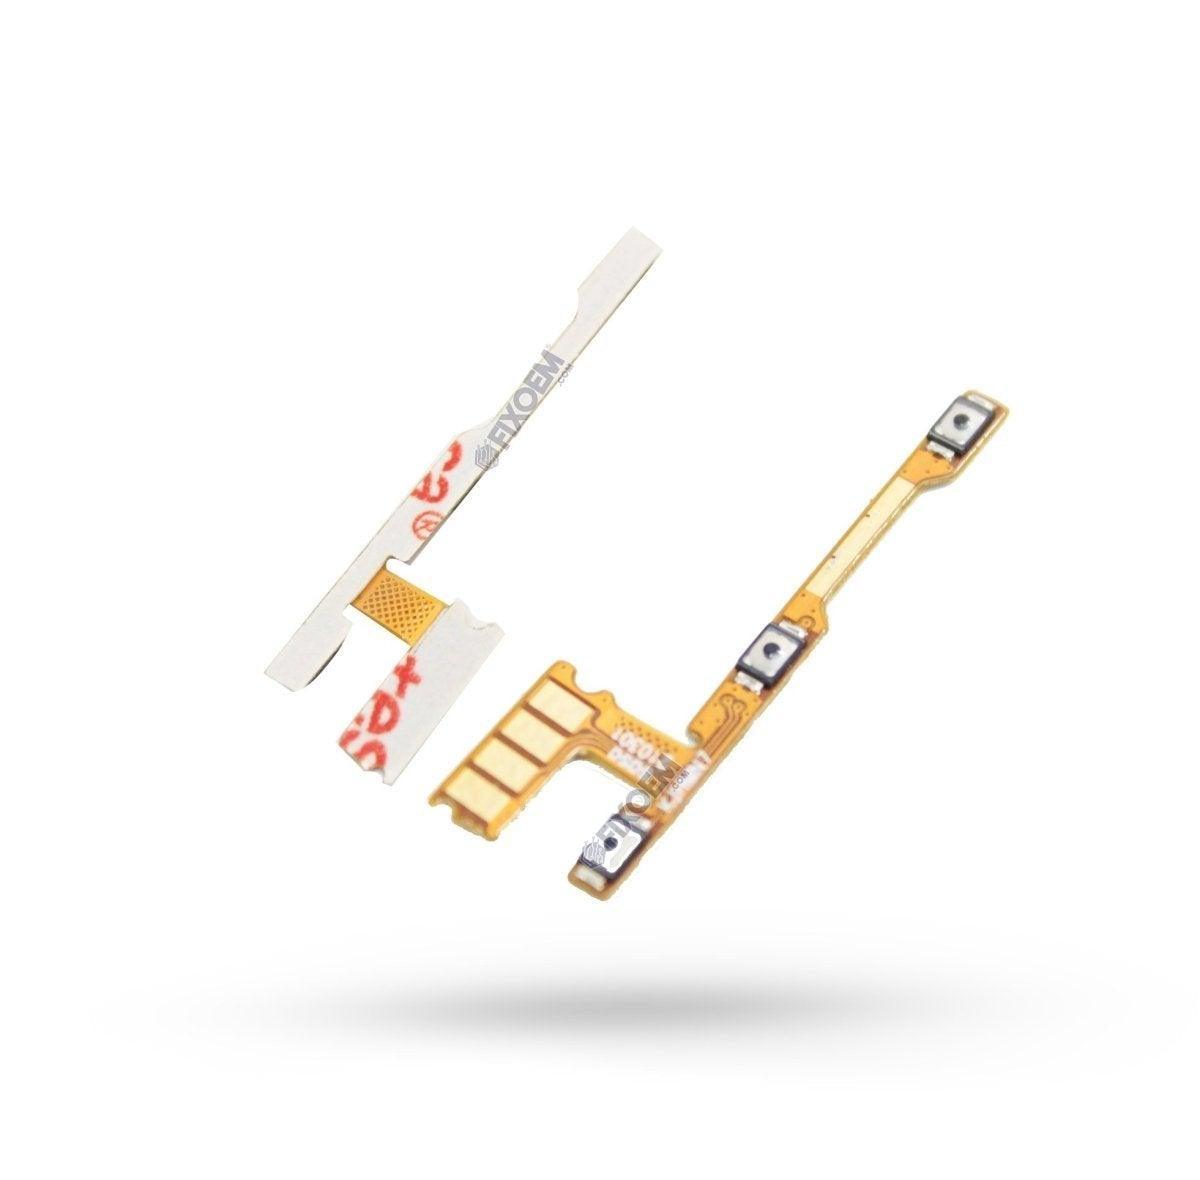 Flex Encendido Xiaomi Redmi Note 8 a solo $ 40.00 Refaccion y puestos celulares, refurbish y microelectronica.- FixOEM